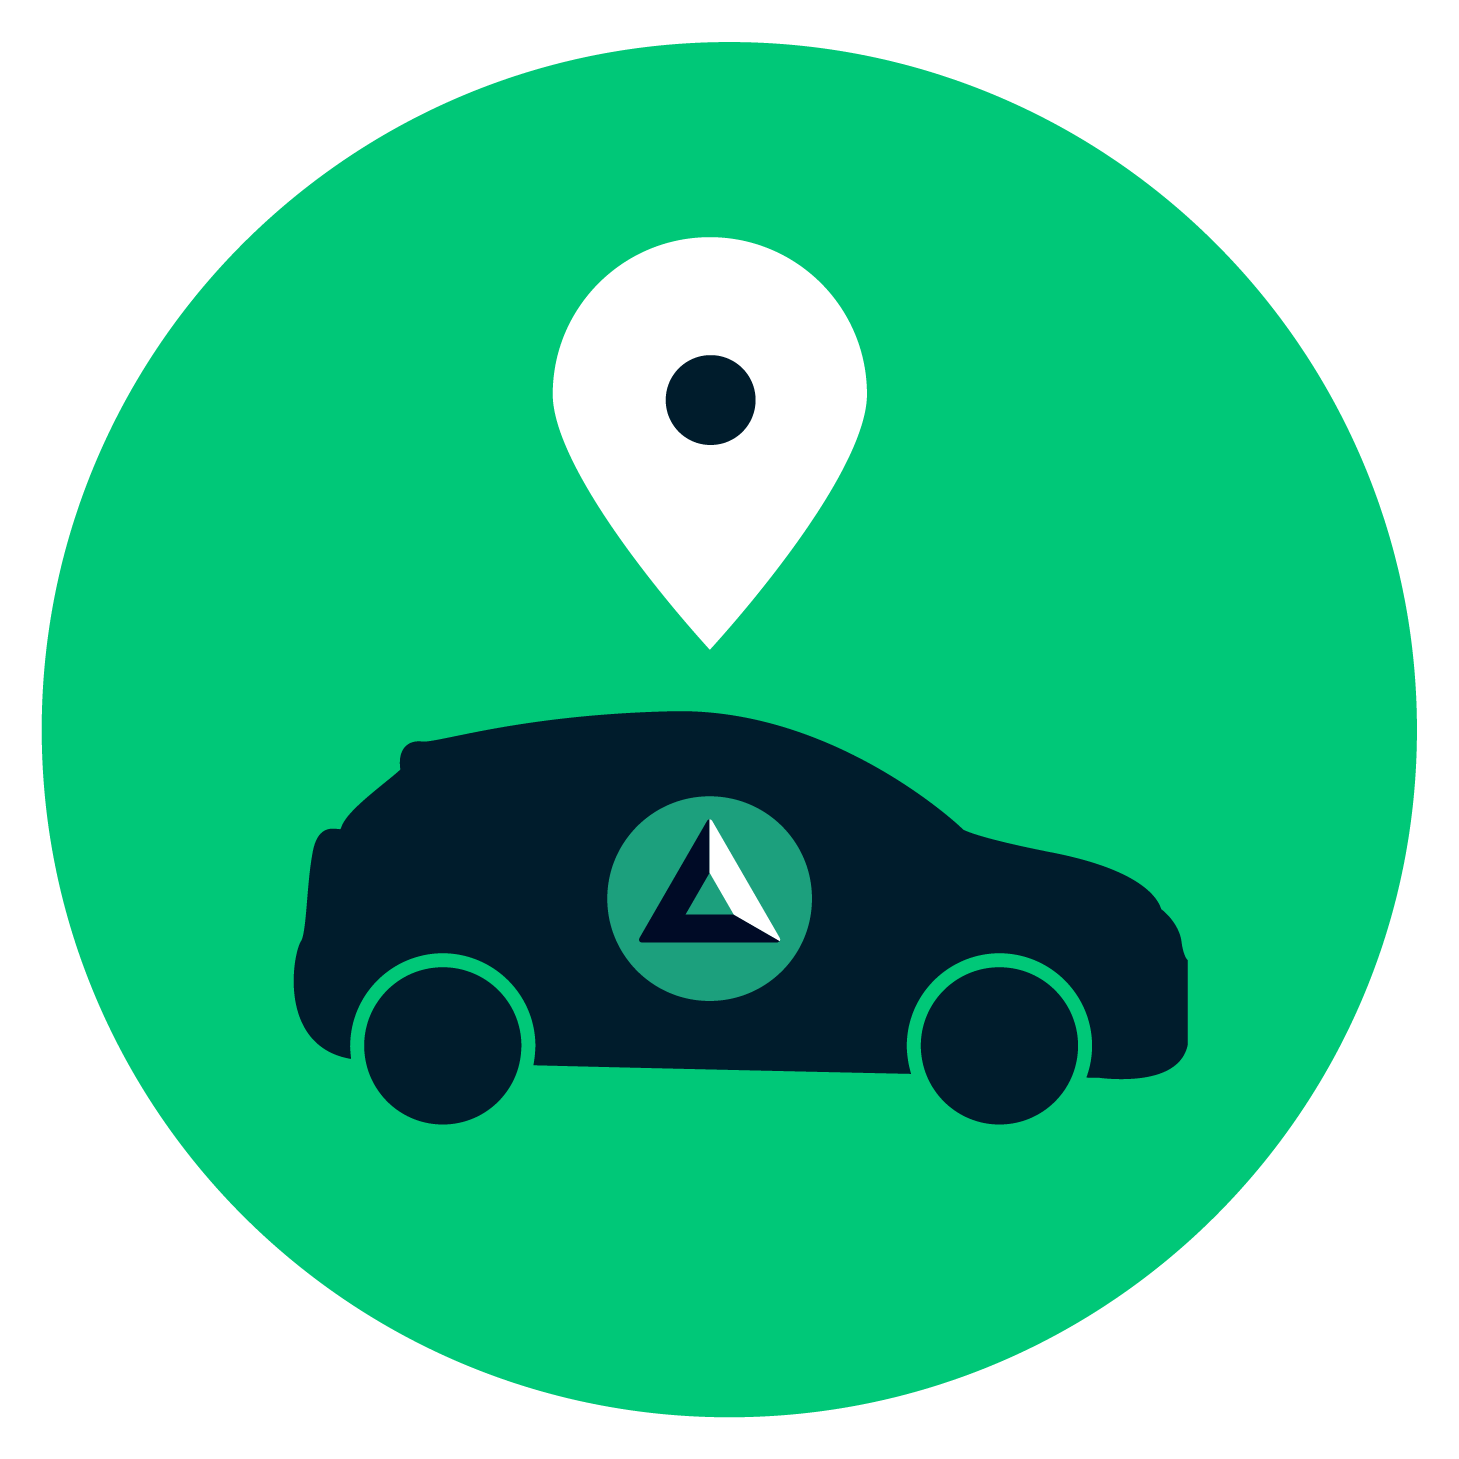 Icono verde con un carro y pin